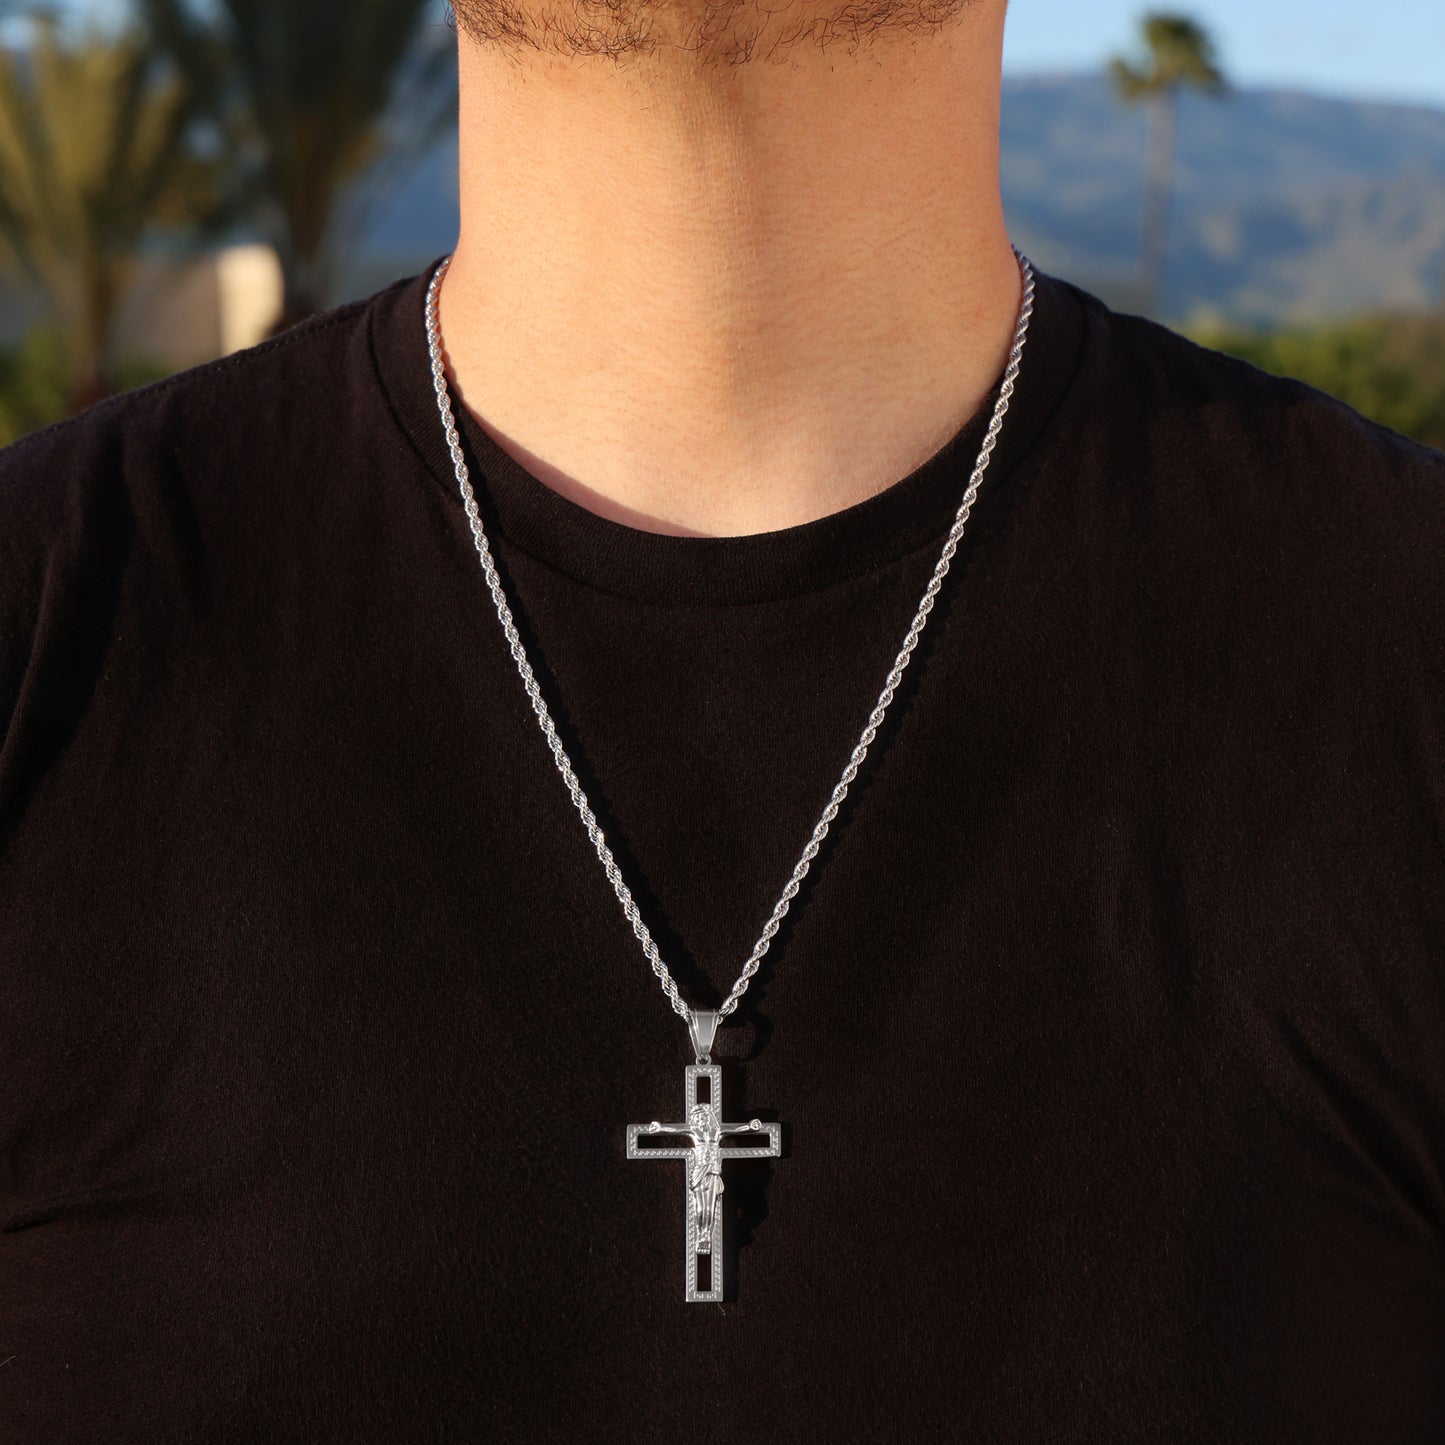 Jesus Crucifix Pendant - Premium 316L Stainless